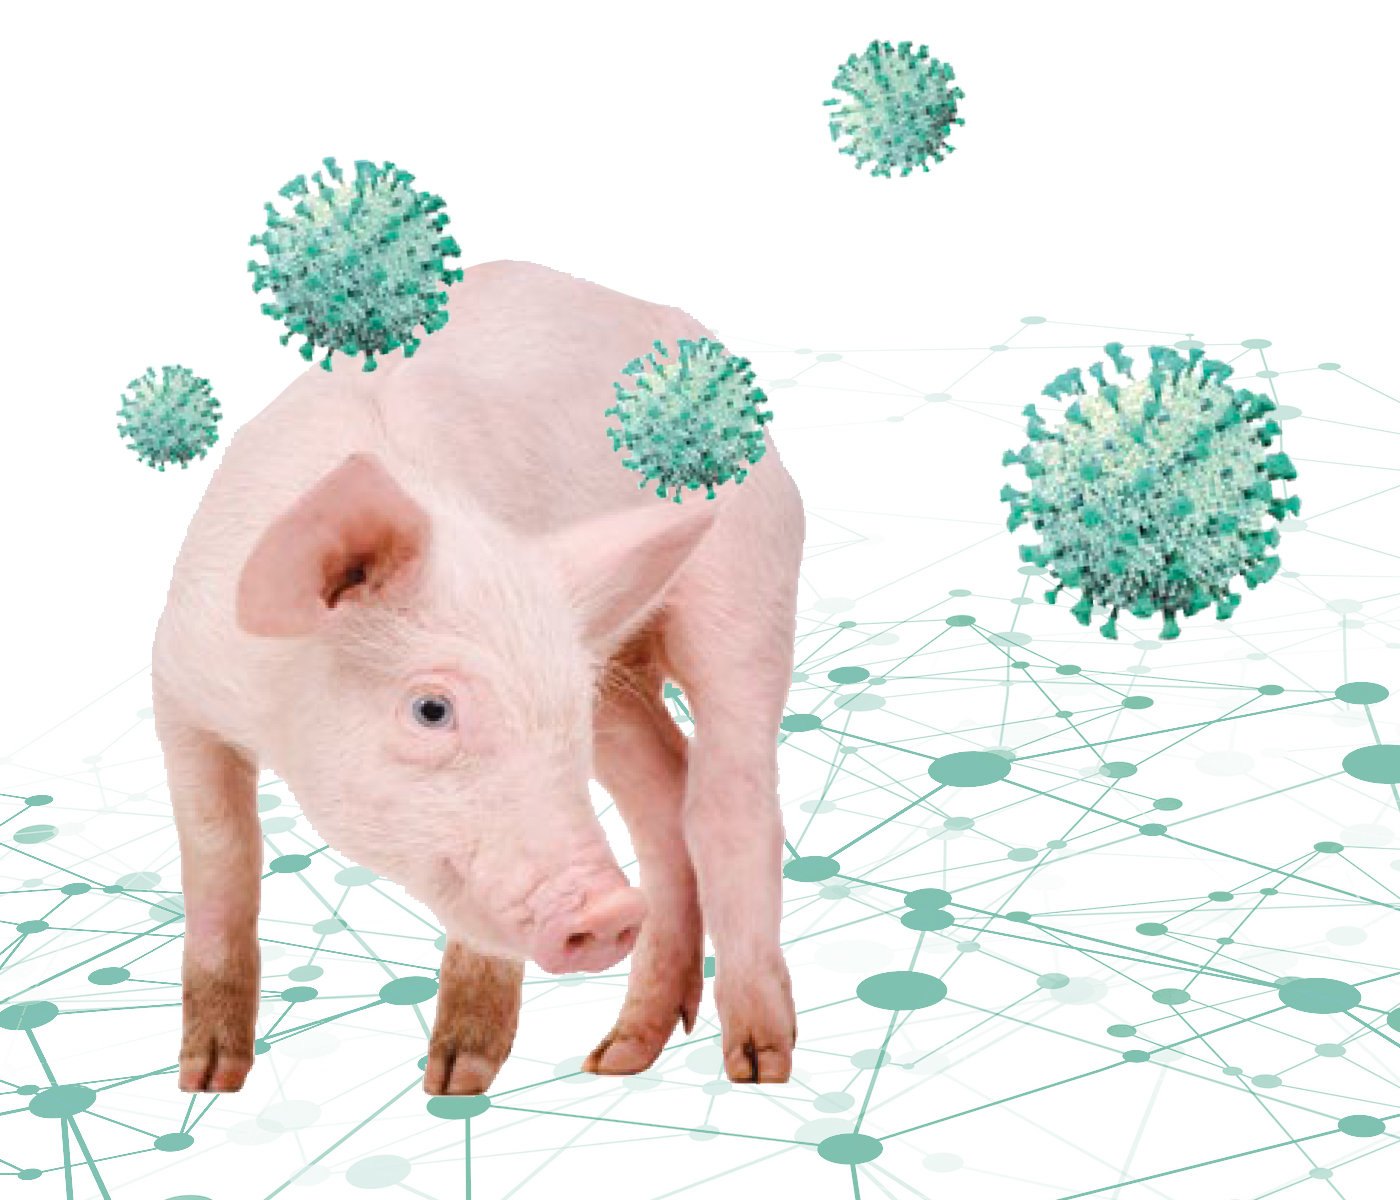 Diversidad genética de coronavirus porcinos implicados en brotes de diarrea en España